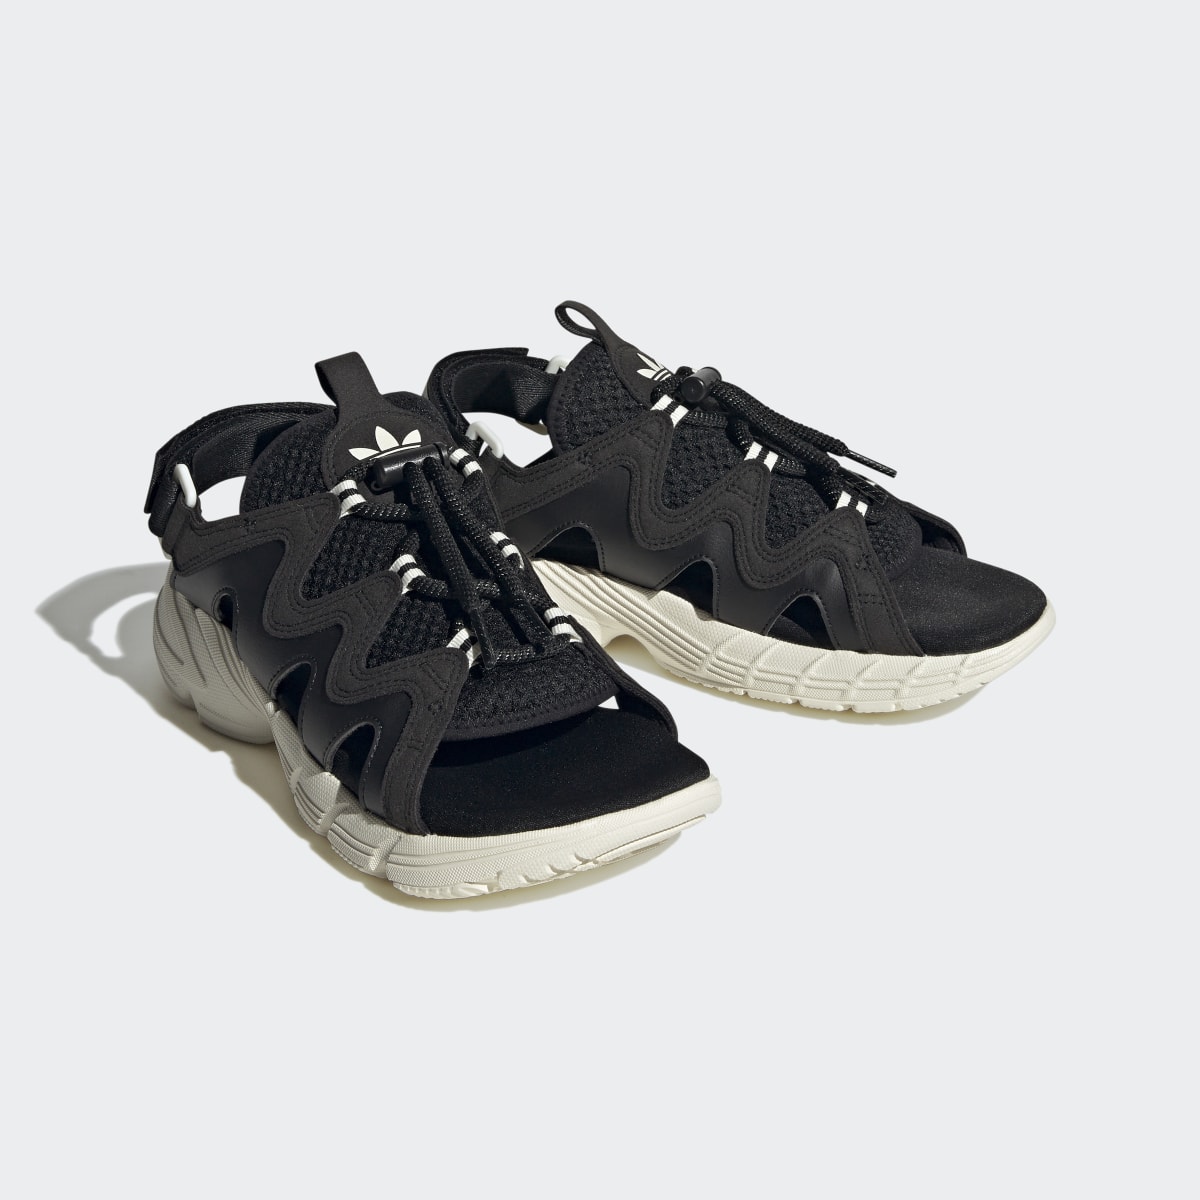 Adidas Astir Sandals. 5